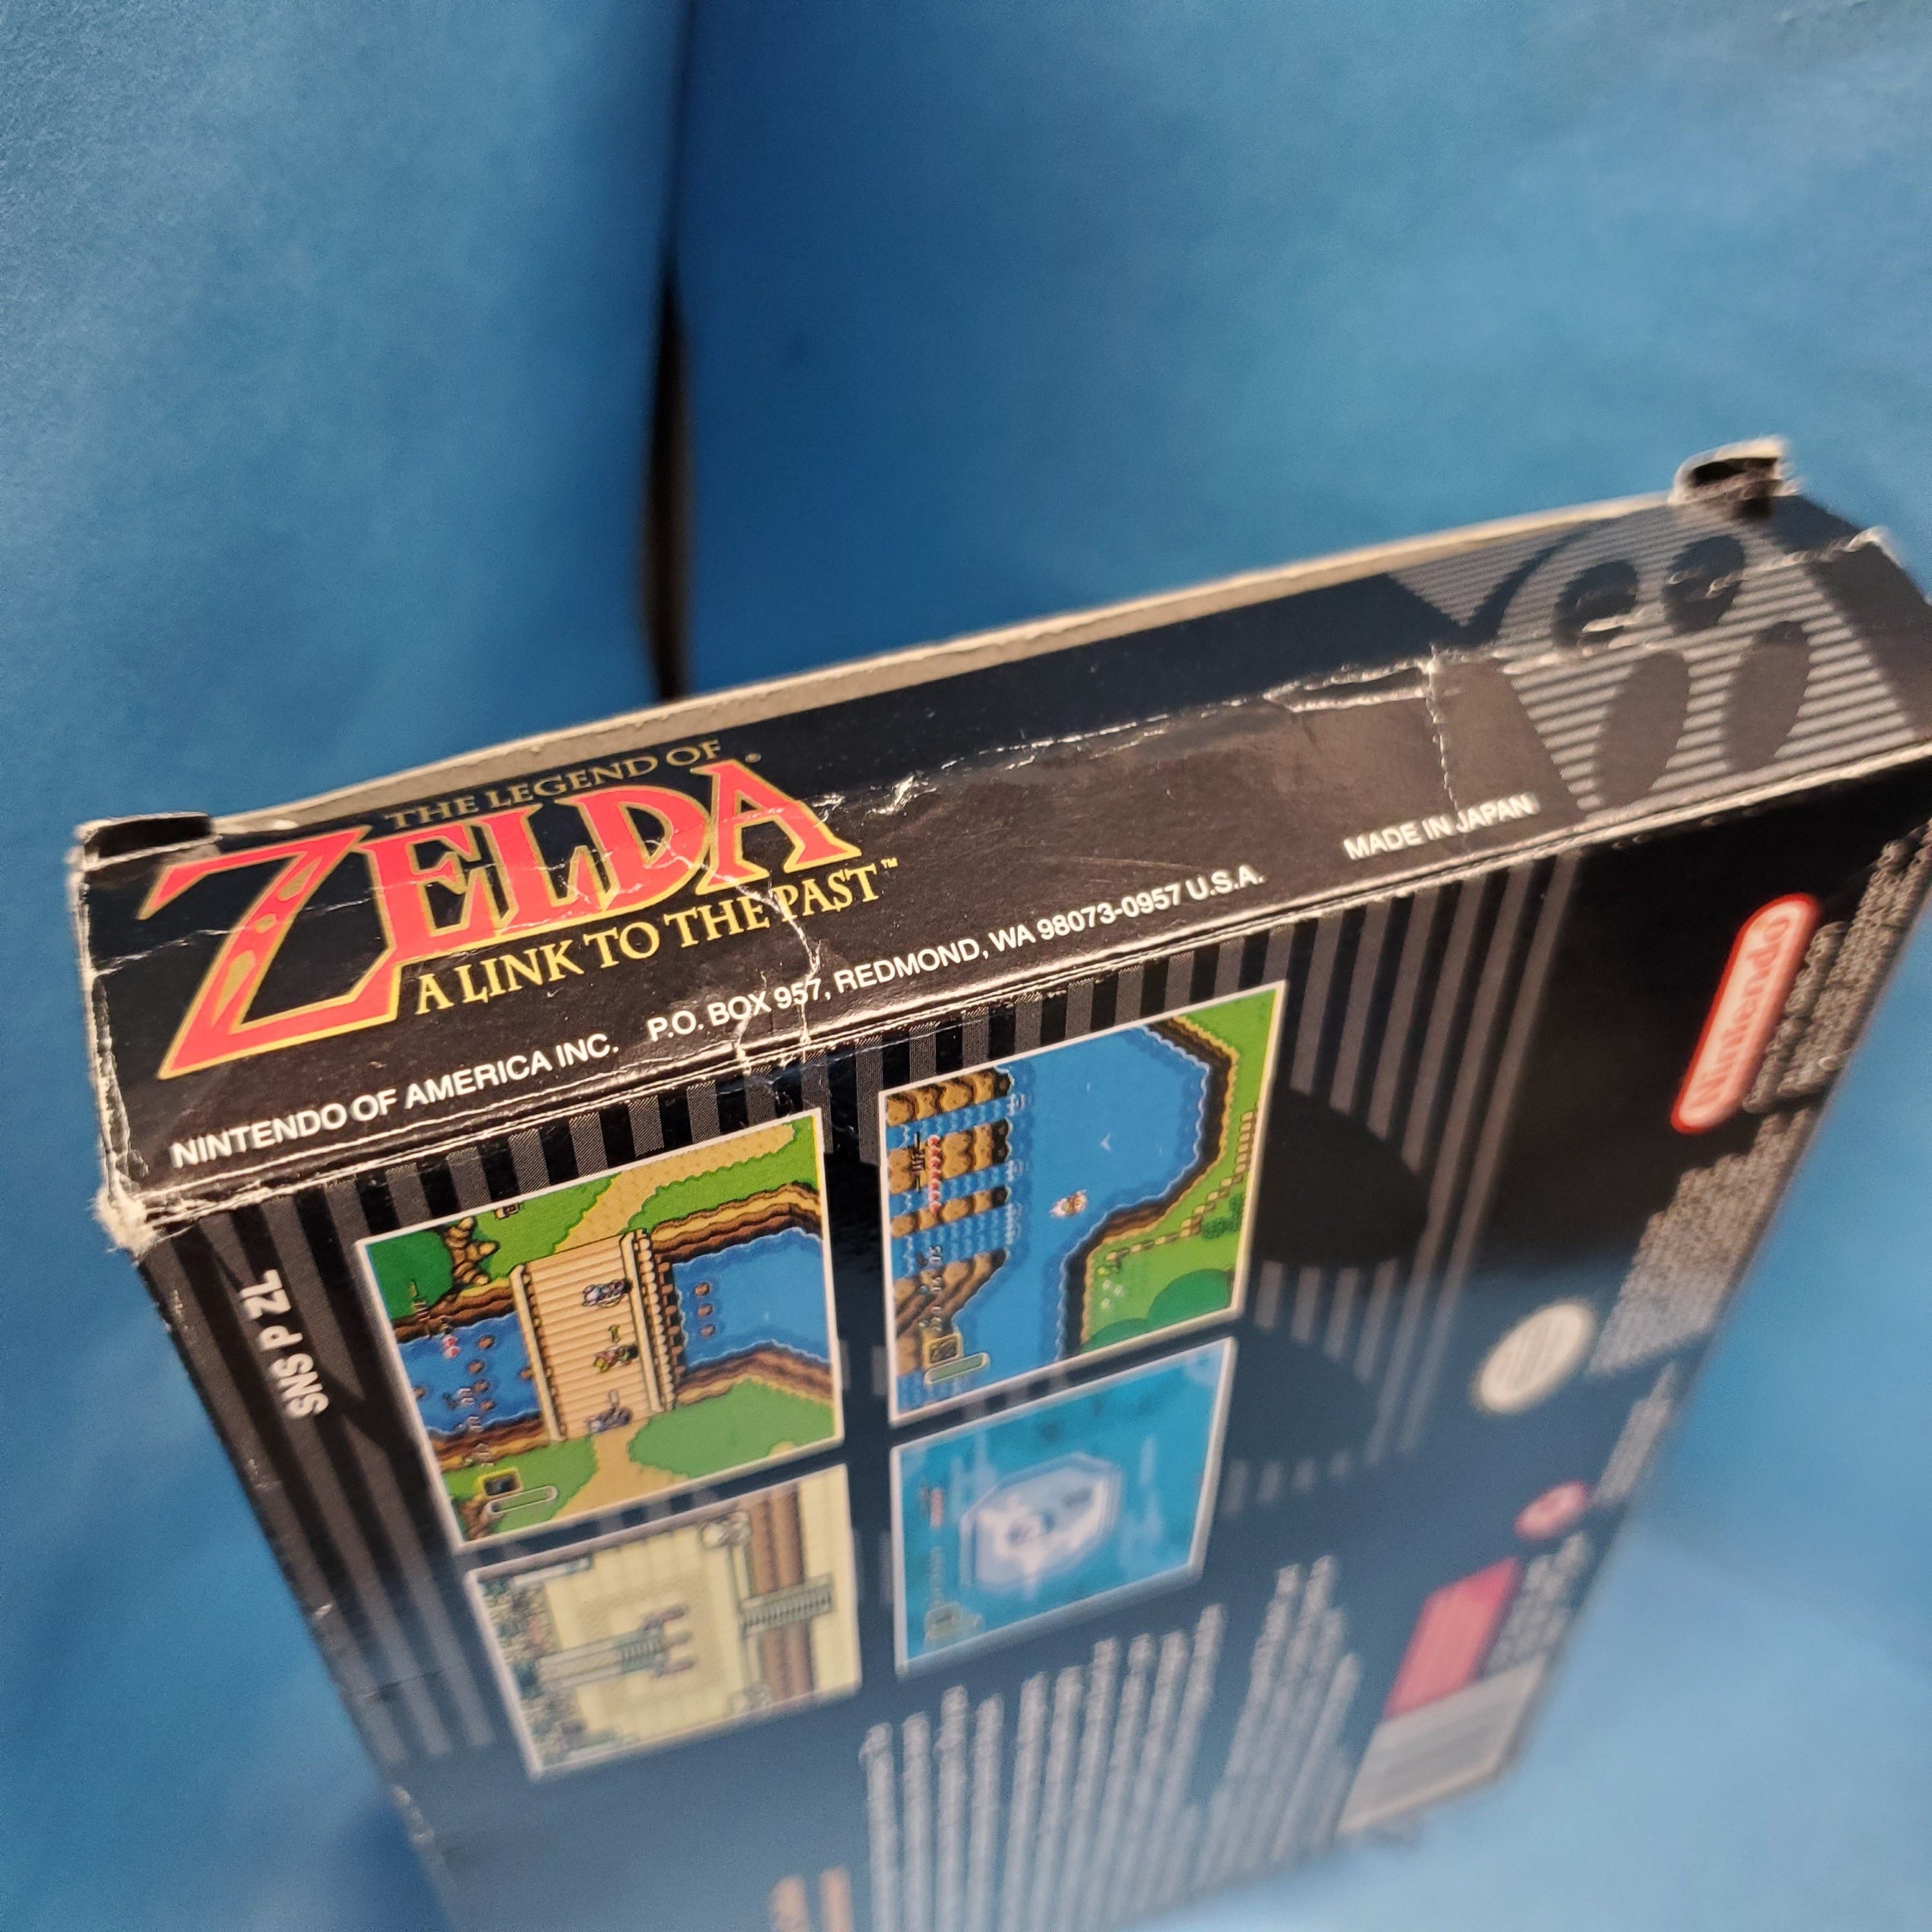 SNES - The Legend of Zelda A Link to the Past (Complet dans la boîte A - Avec manuel)